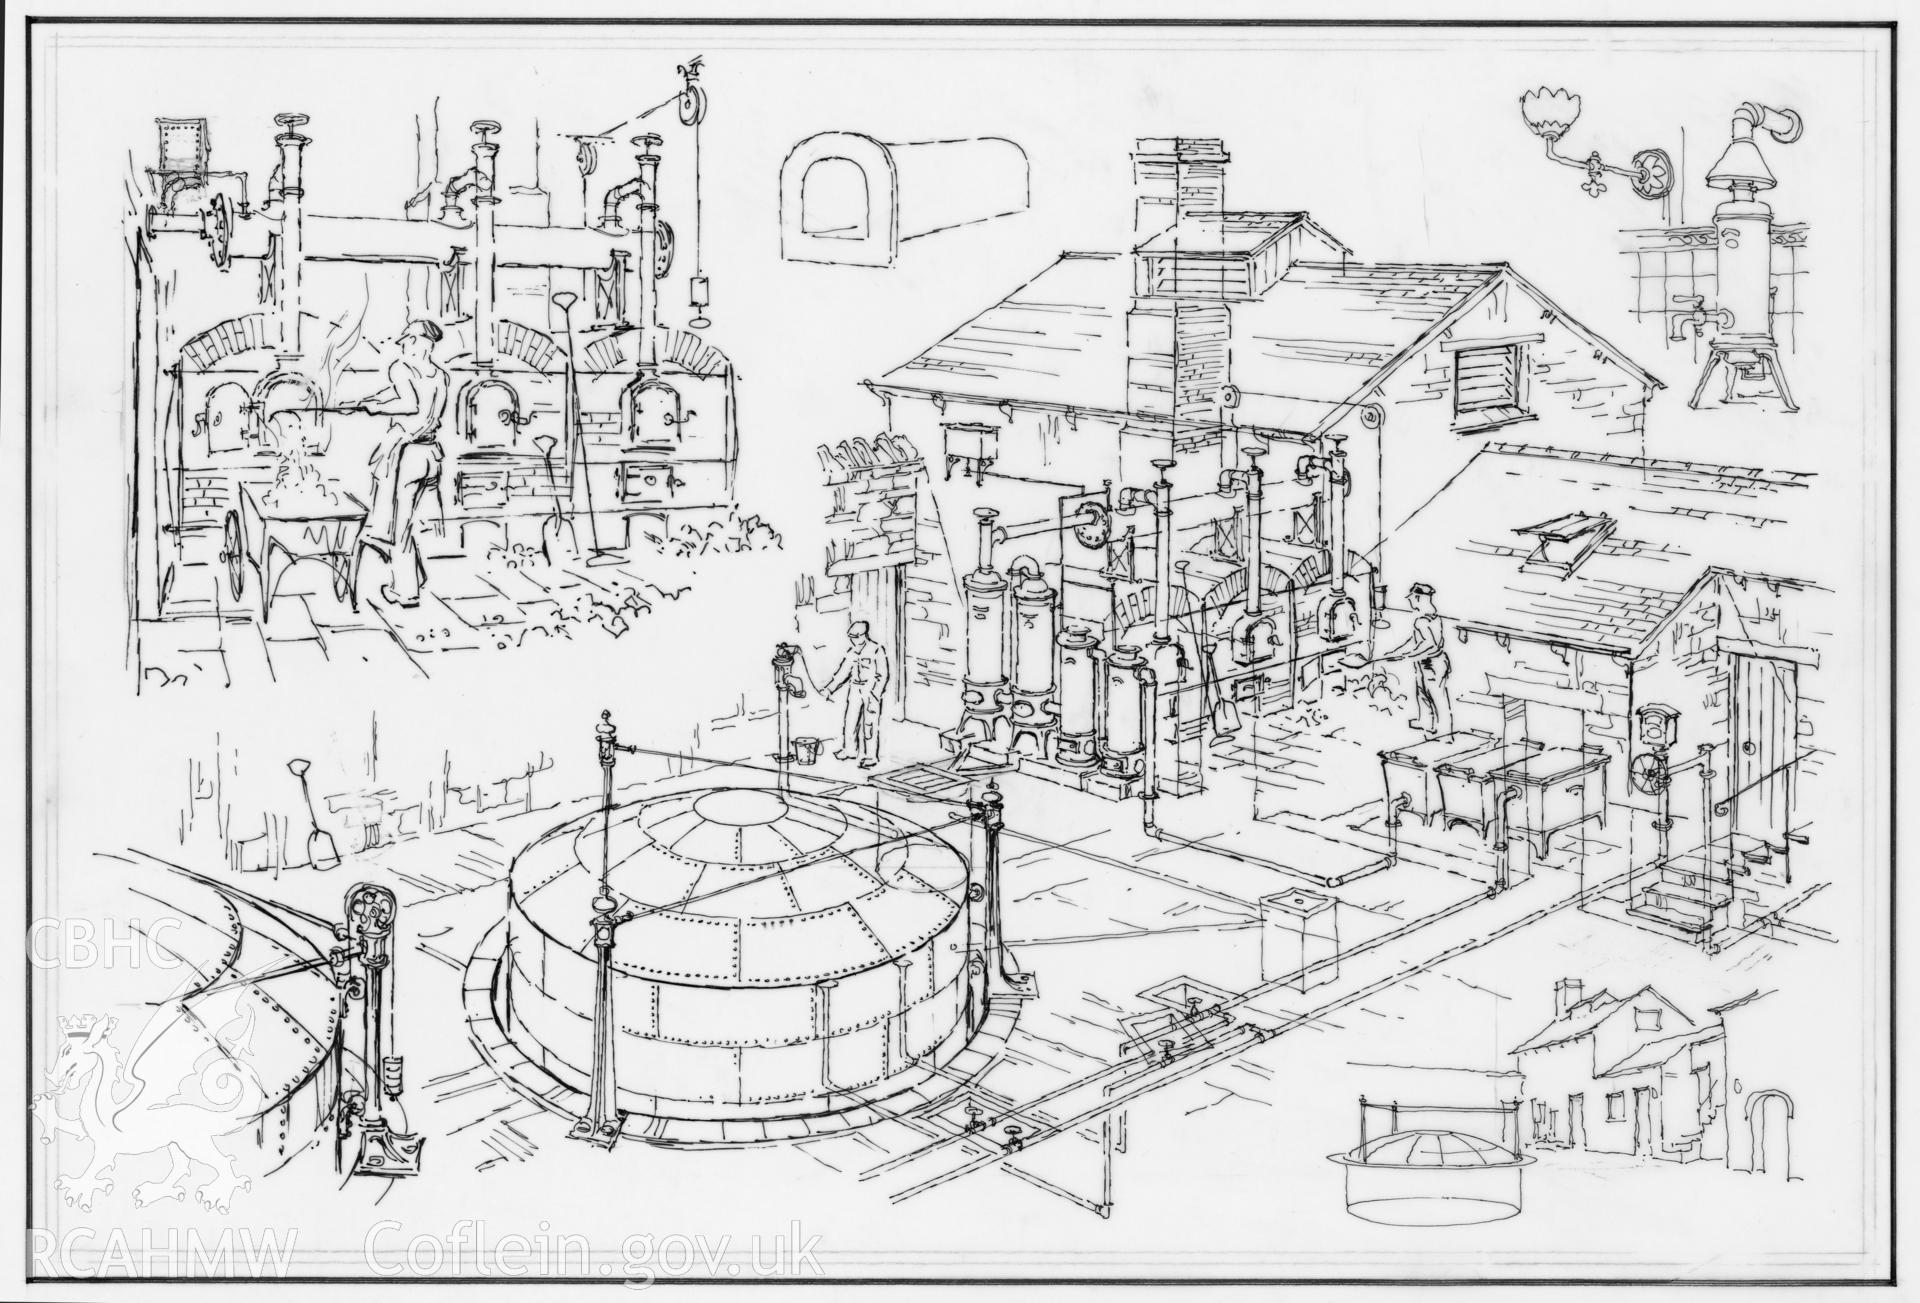 Parc Glynllifon Estate Workshops - Gasworks: original (ink) drawing.